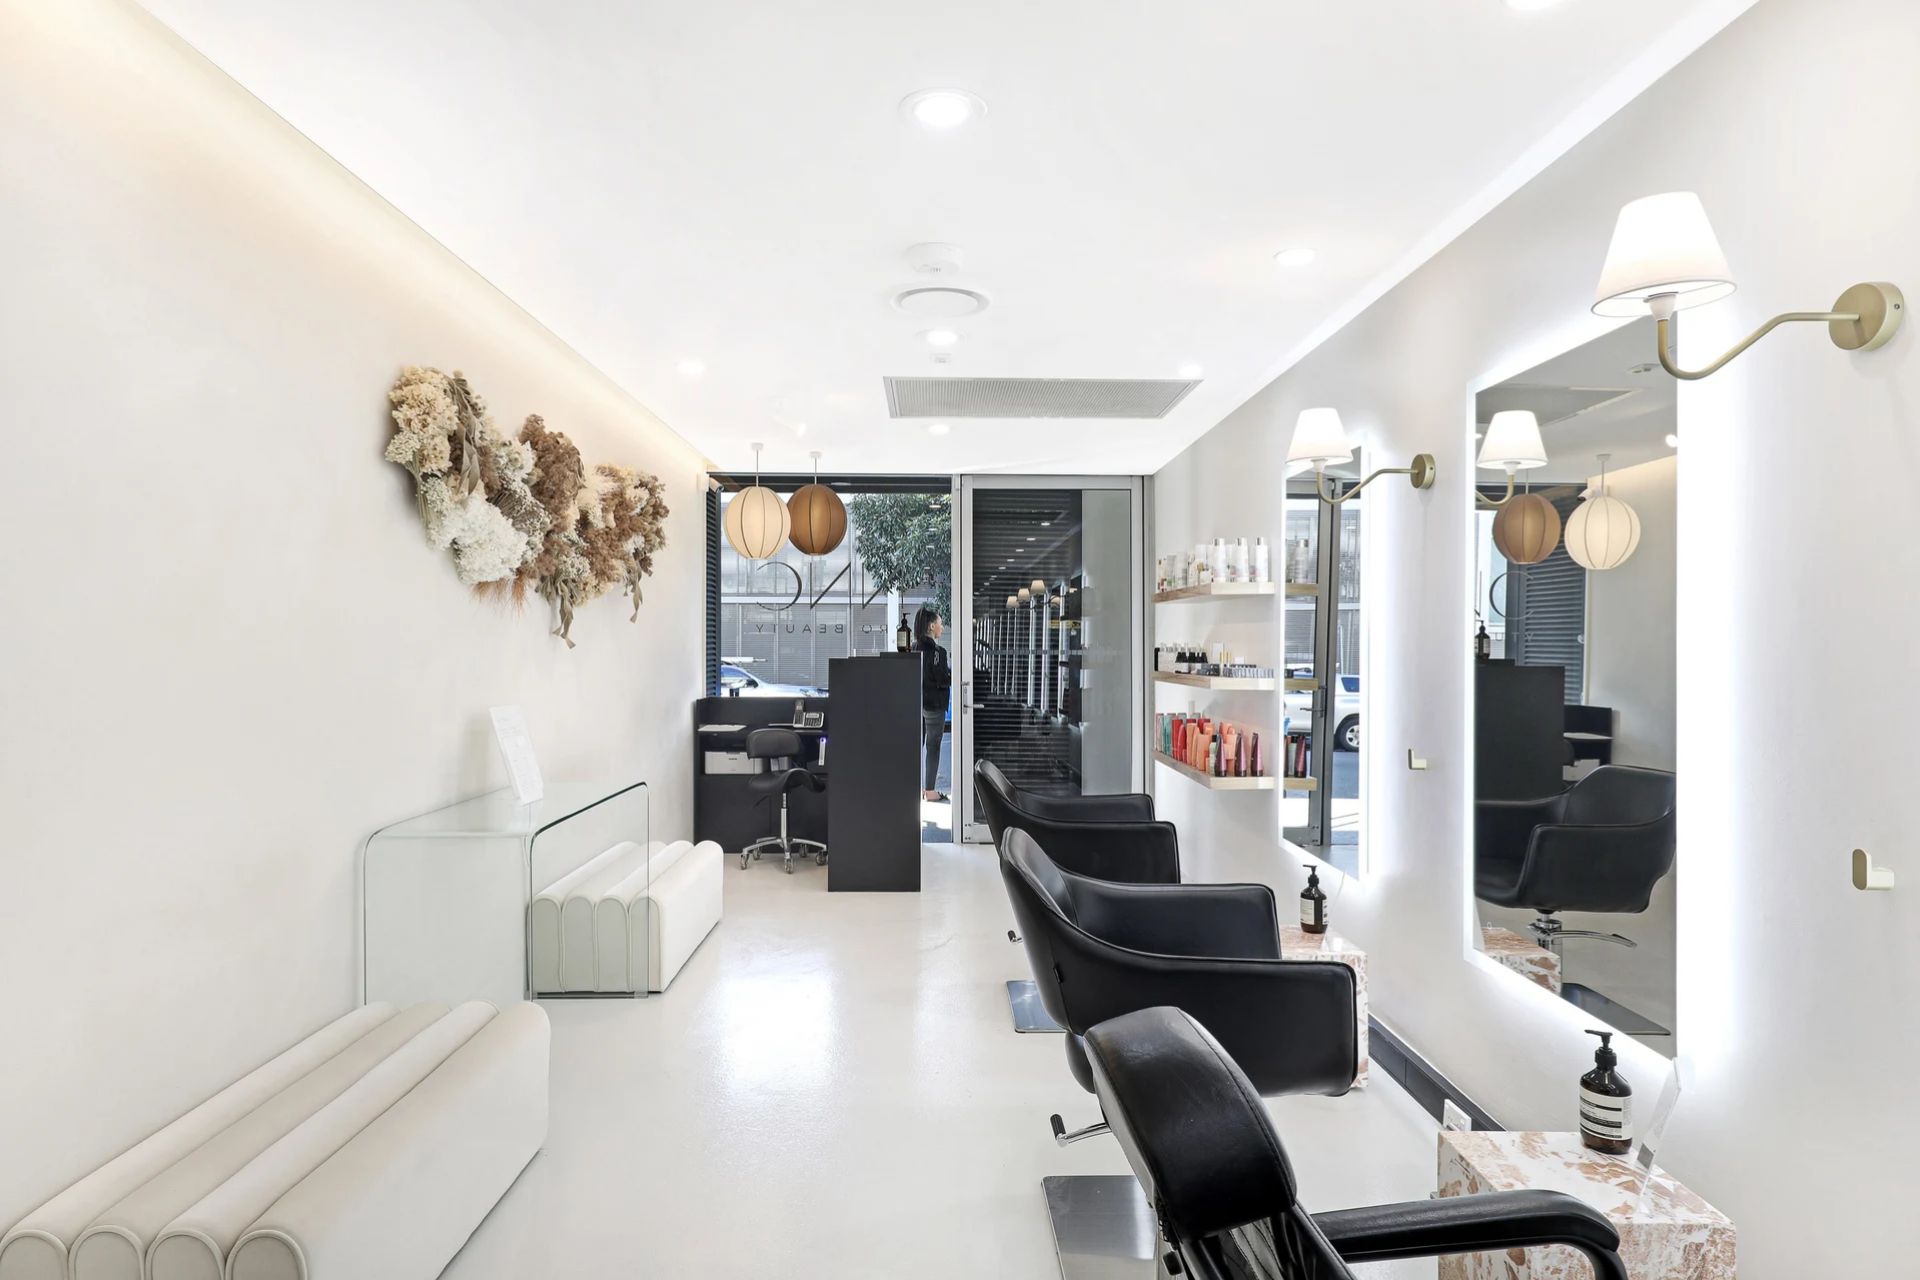 NNC Pro Beauty Salon Sydney